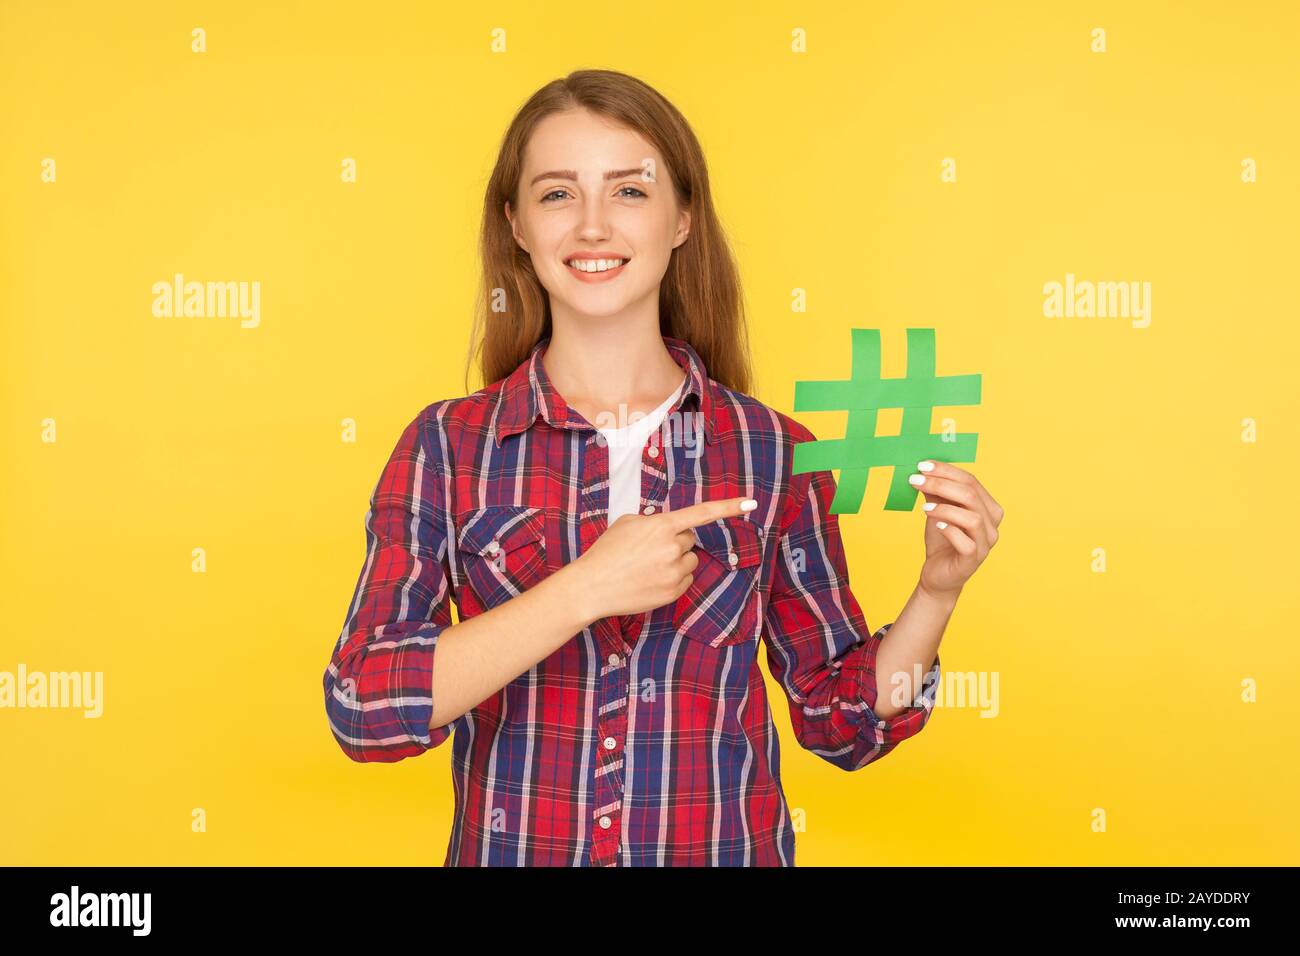 Tendance des réseaux sociaux, blogging. Portrait de la jeune fille de gingembre dans une chemise à carreaux pointant vers le hashtag de papier vert, montrant le signe de hachage et le sourire à l'appareil photo. IND Banque D'Images